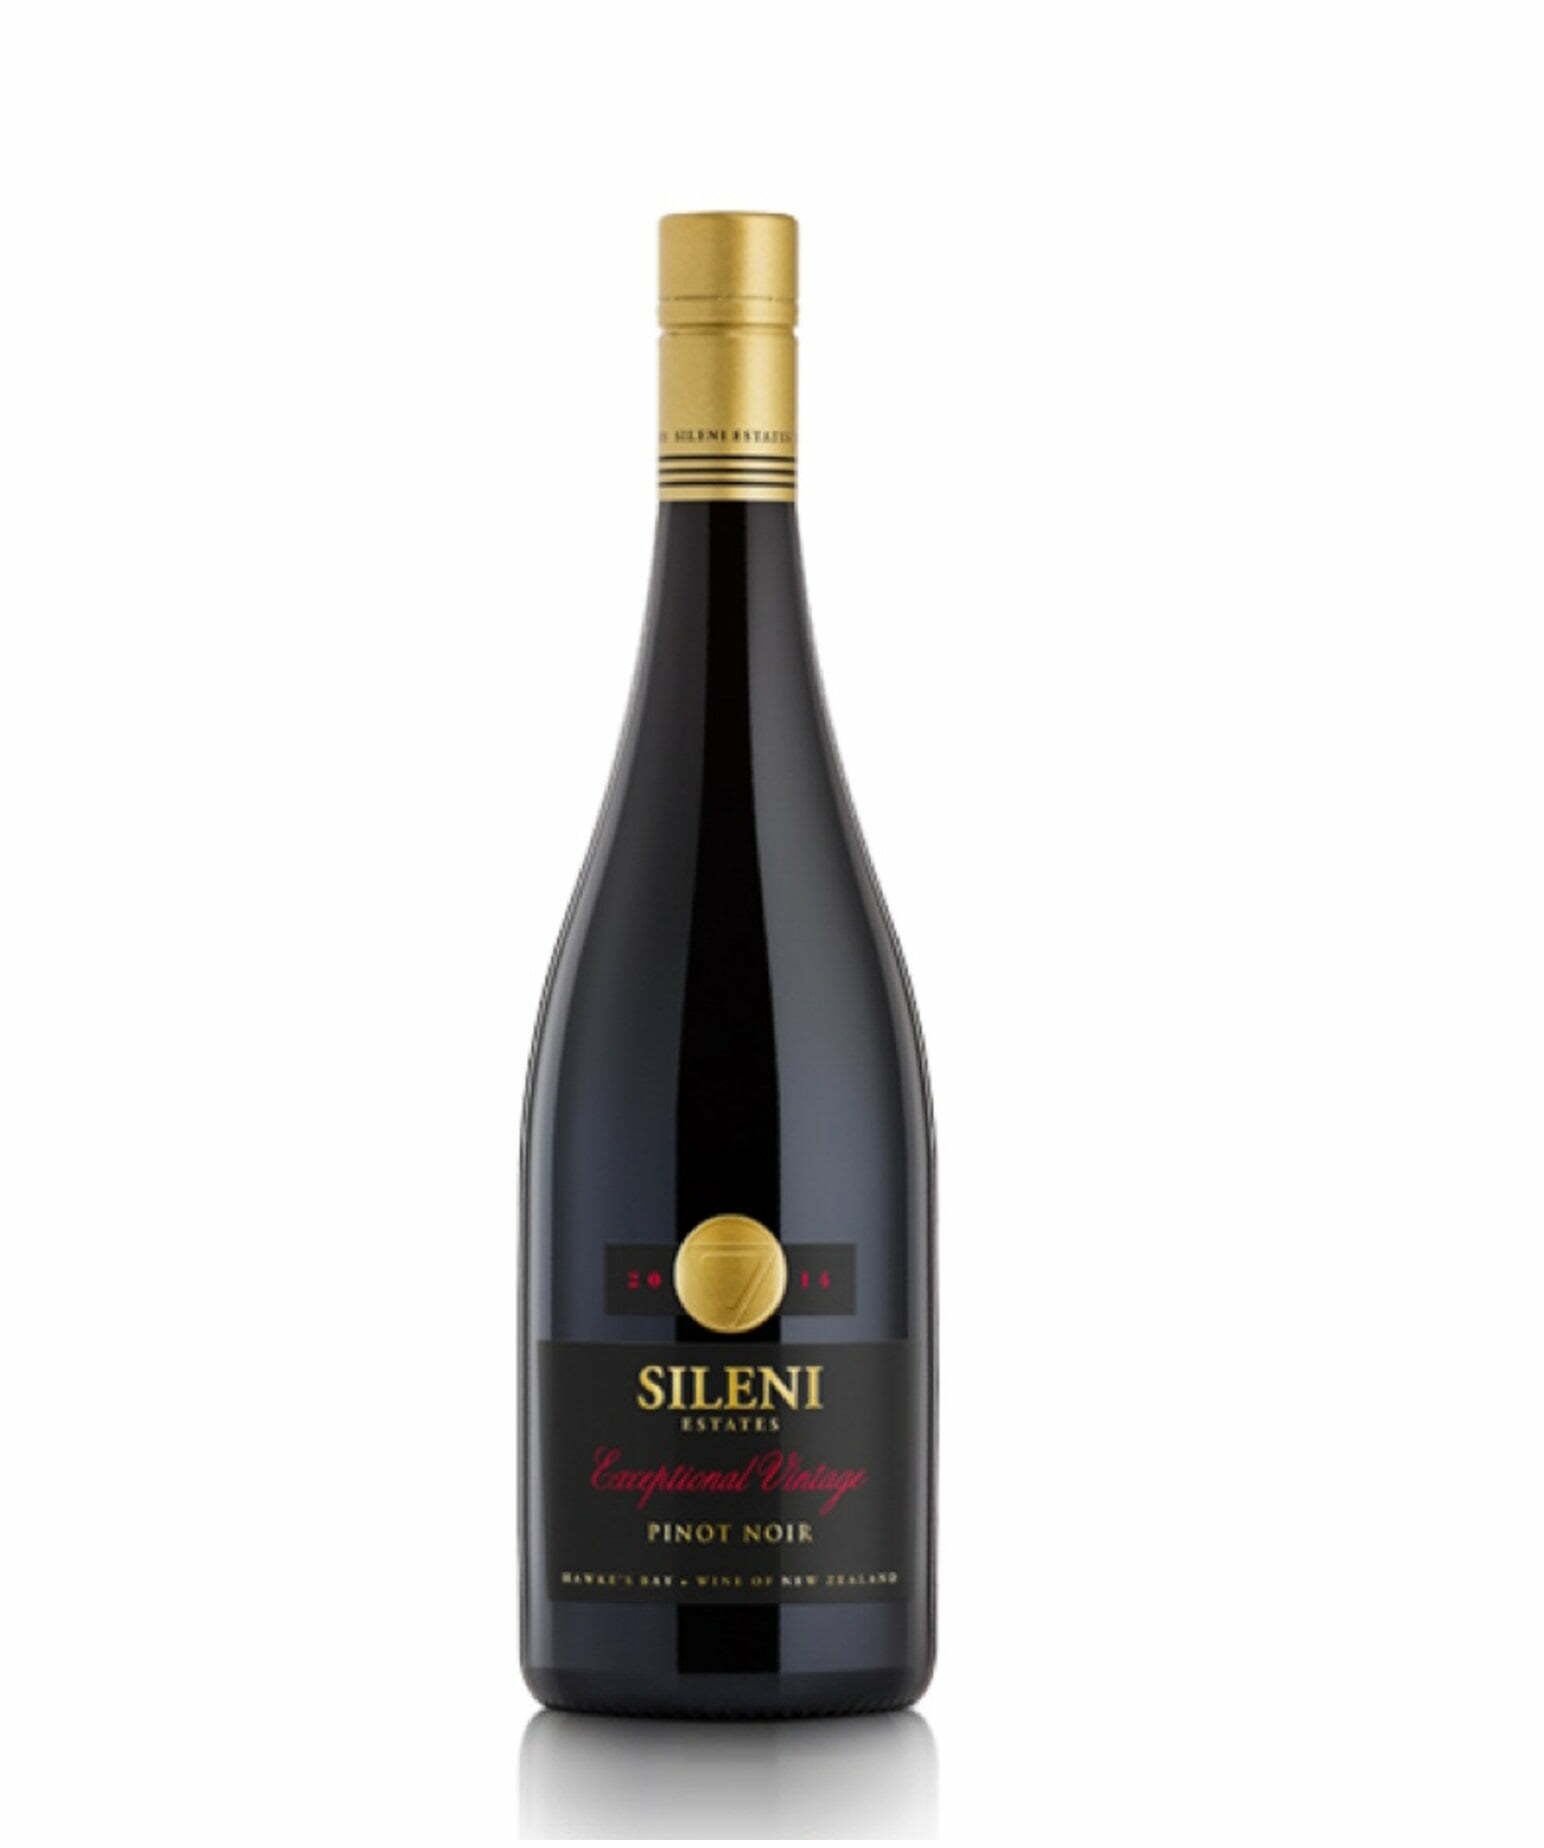 Sileni Estates Exceptional Vintage Pinot Noir 2017 (1x75cl) - TwoMoreGlasses.com